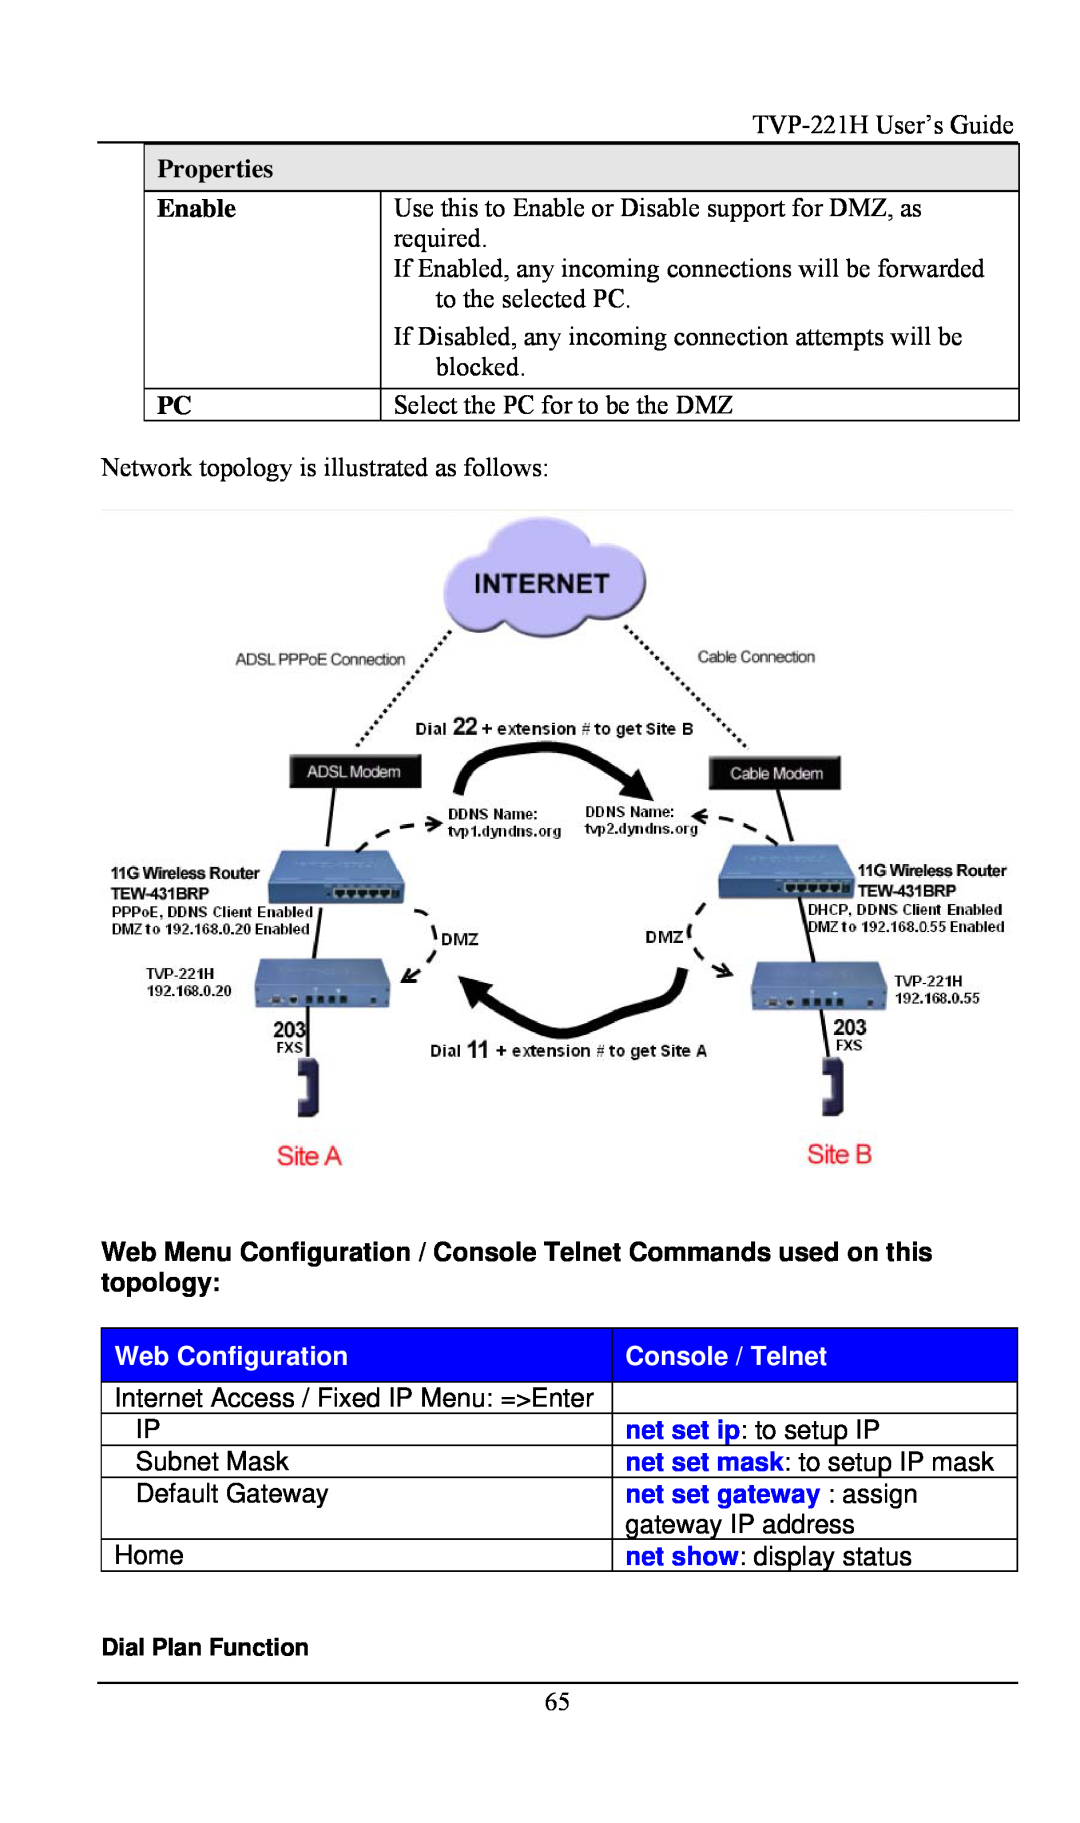 TRENDnet VoIP Gateway, TVP- 221H manual Properties, Enable, Web Configuration, Console / Telnet, net set gateway assign 